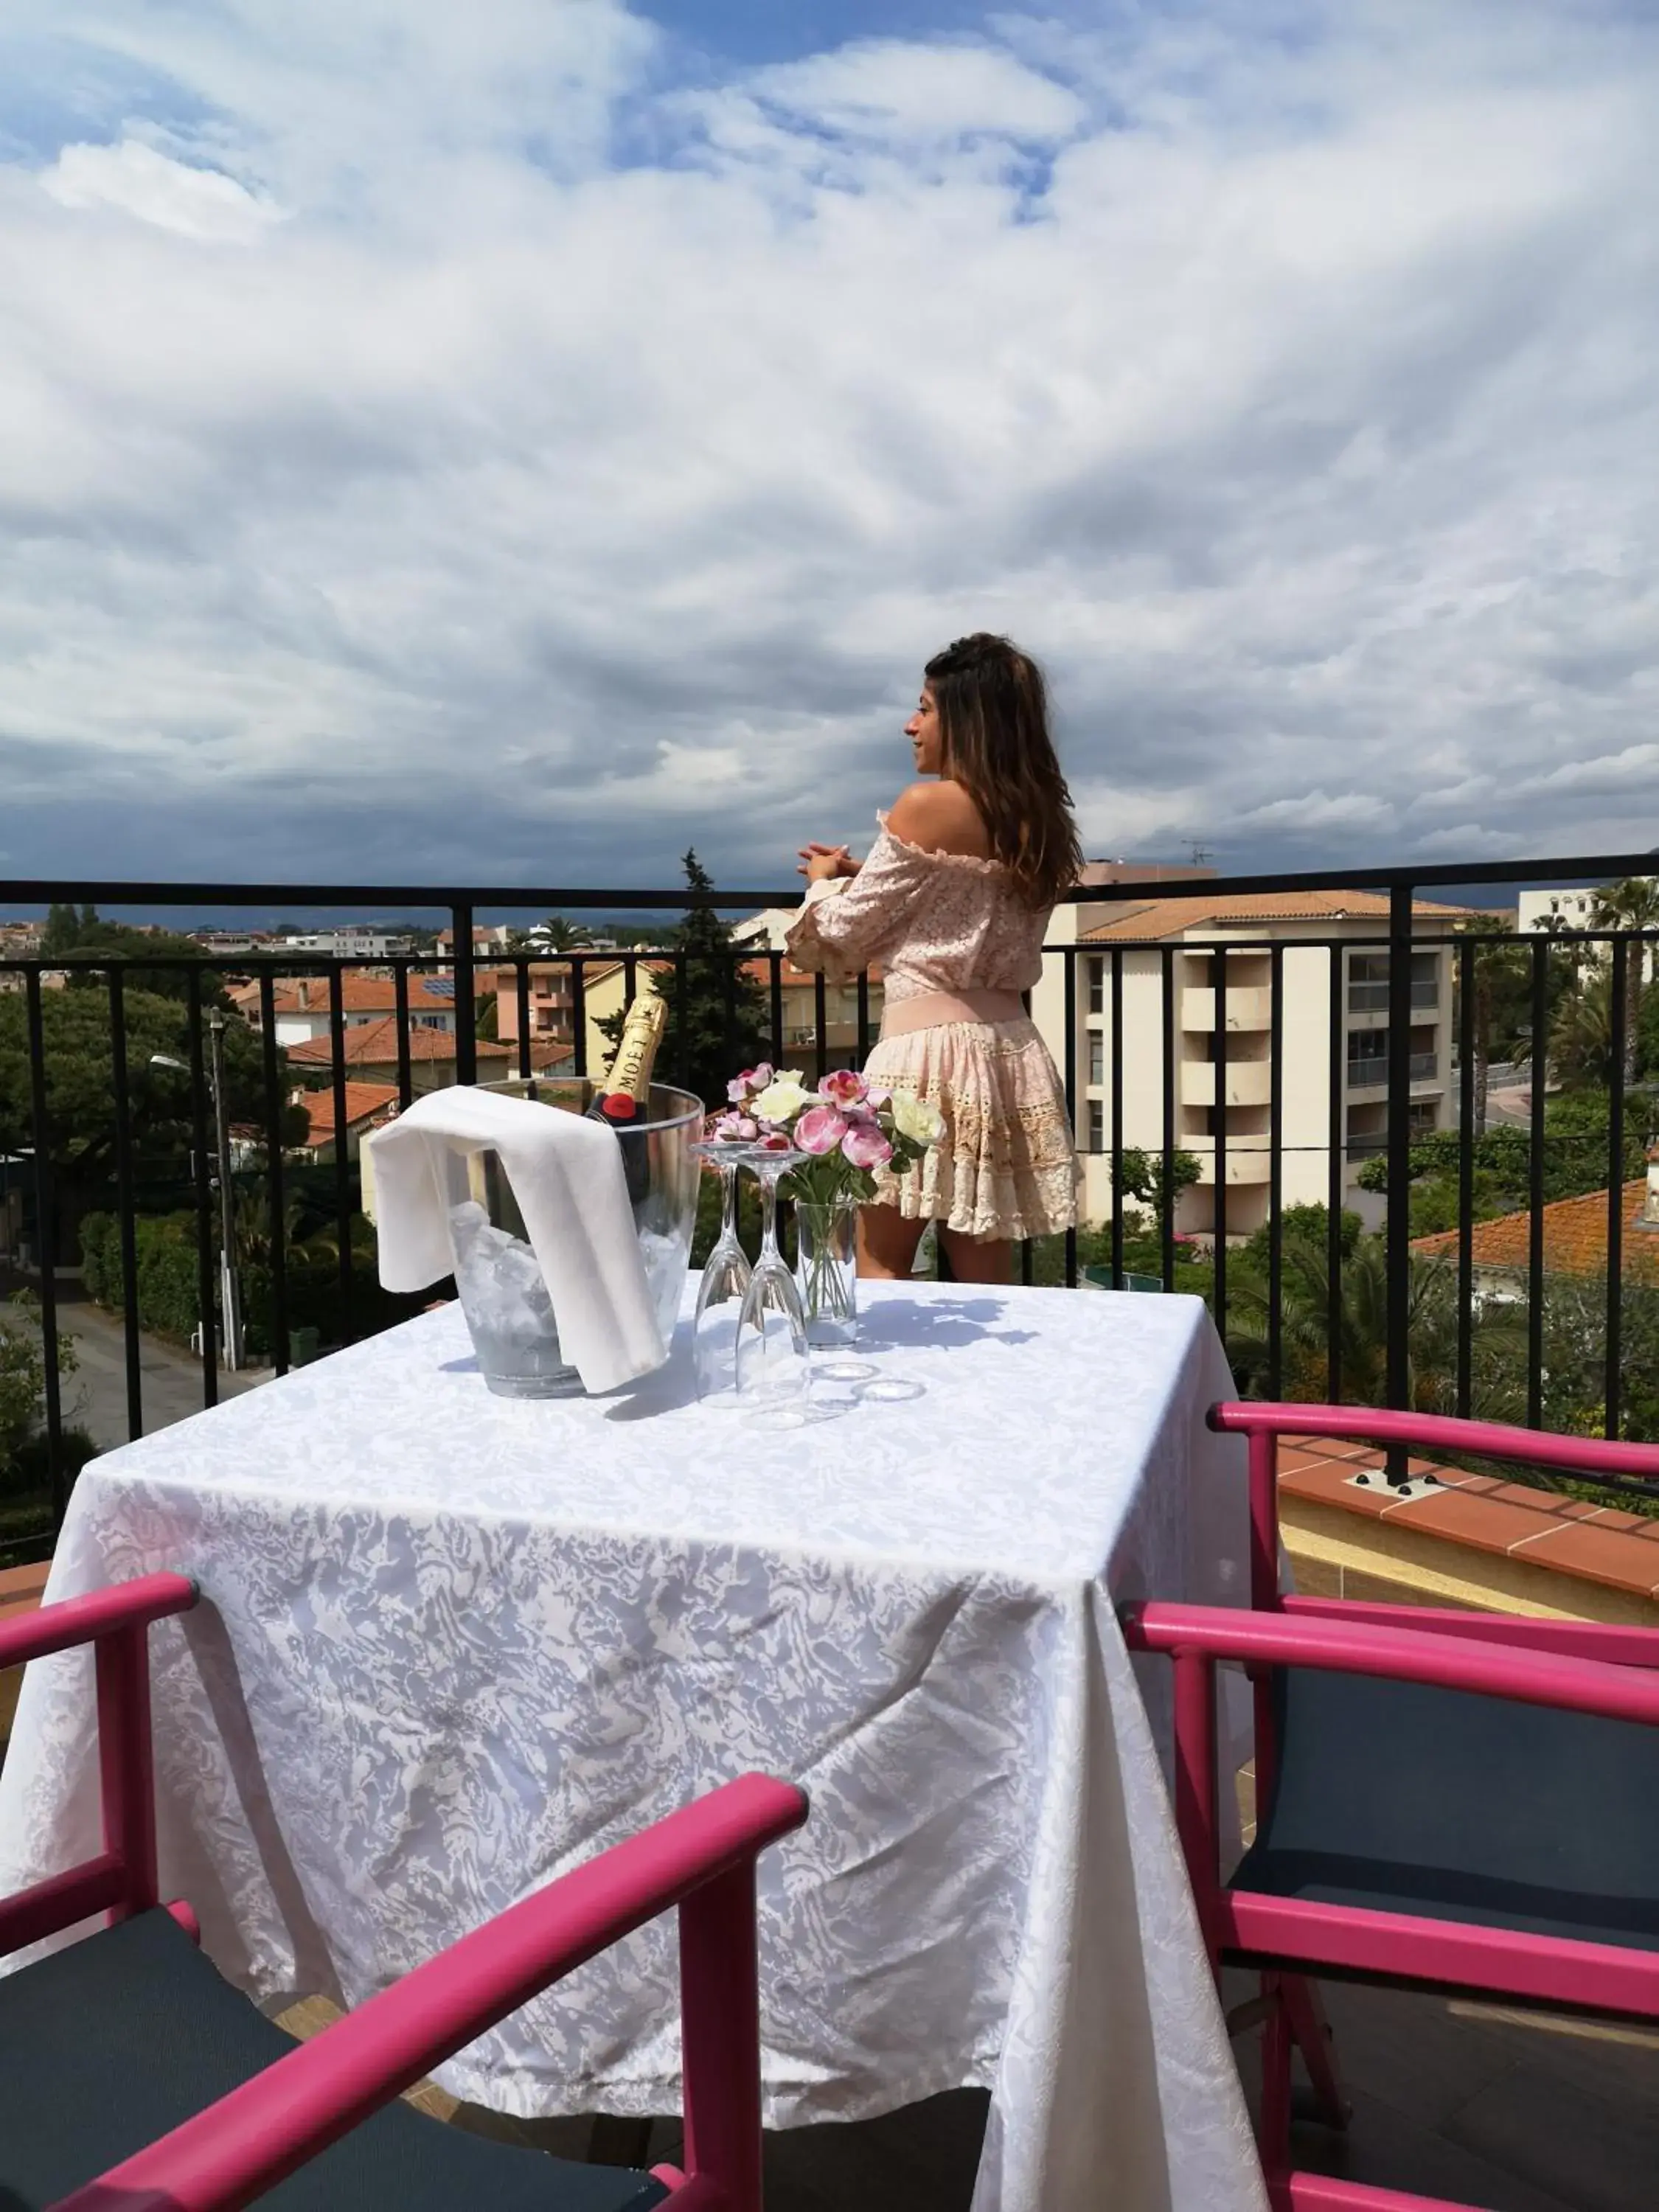 Balcony/Terrace in Atoll Hotel restaurant